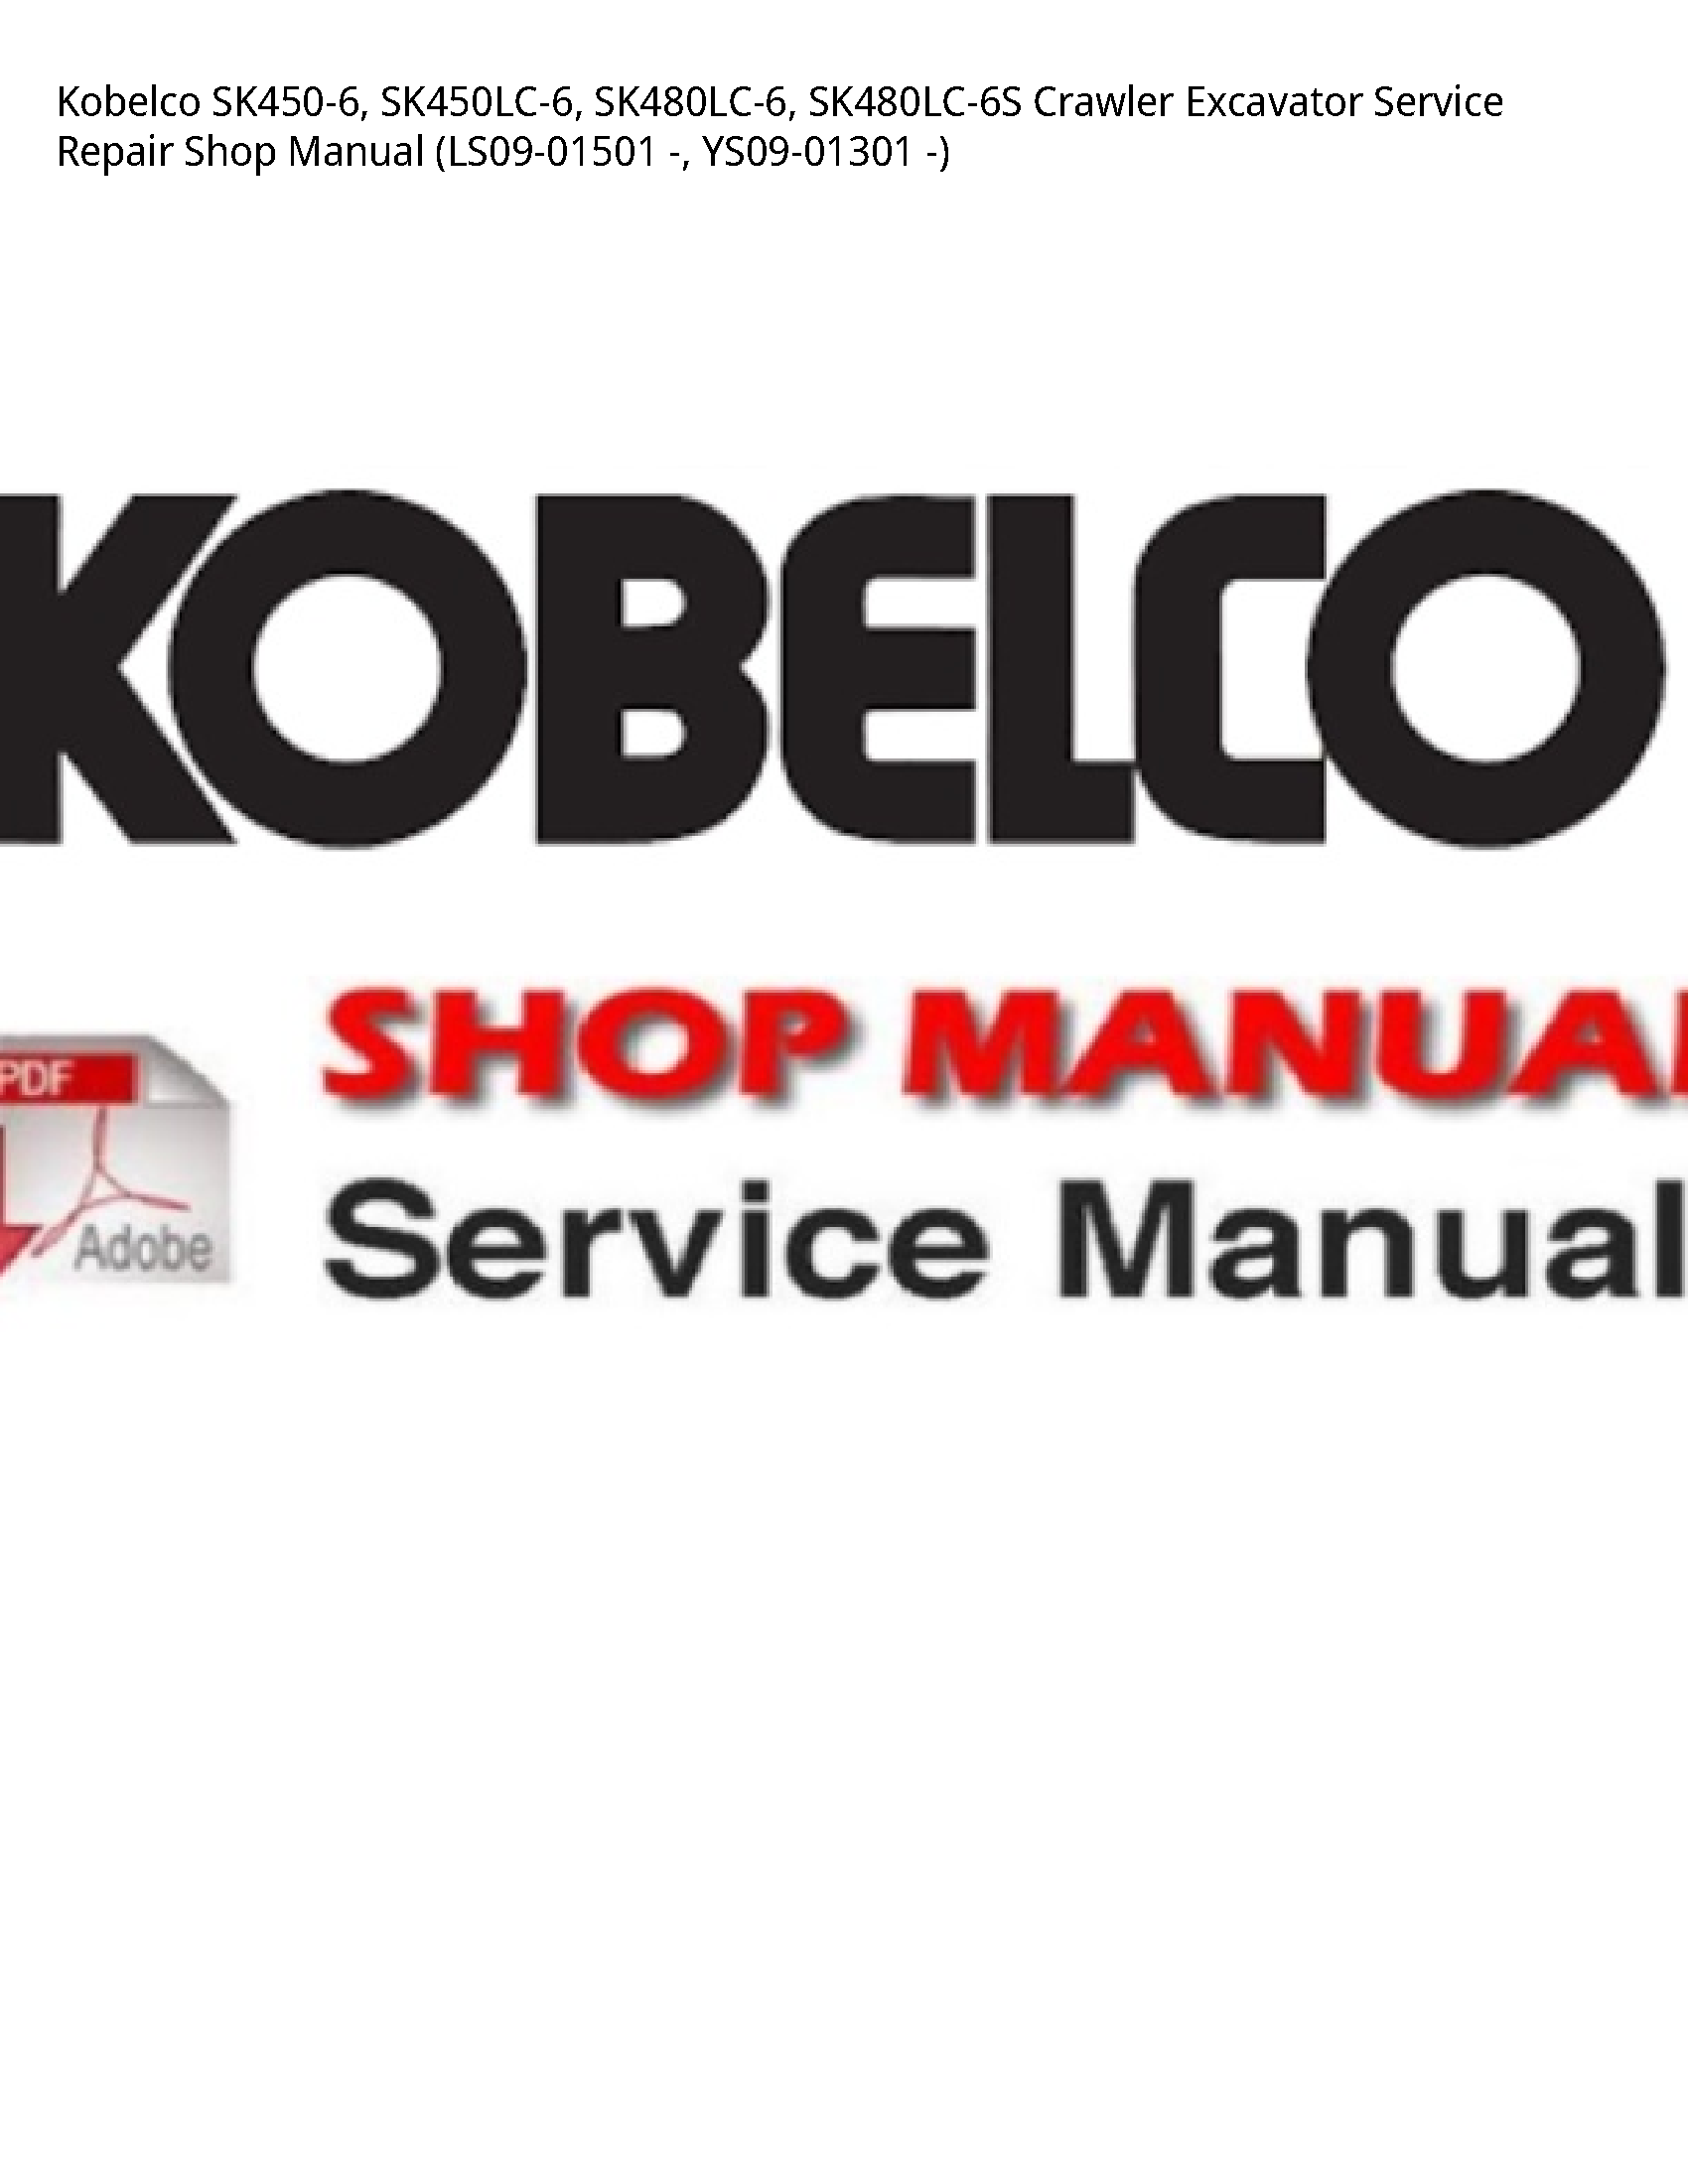 Kobelco SK450-6 Crawler Excavator manual